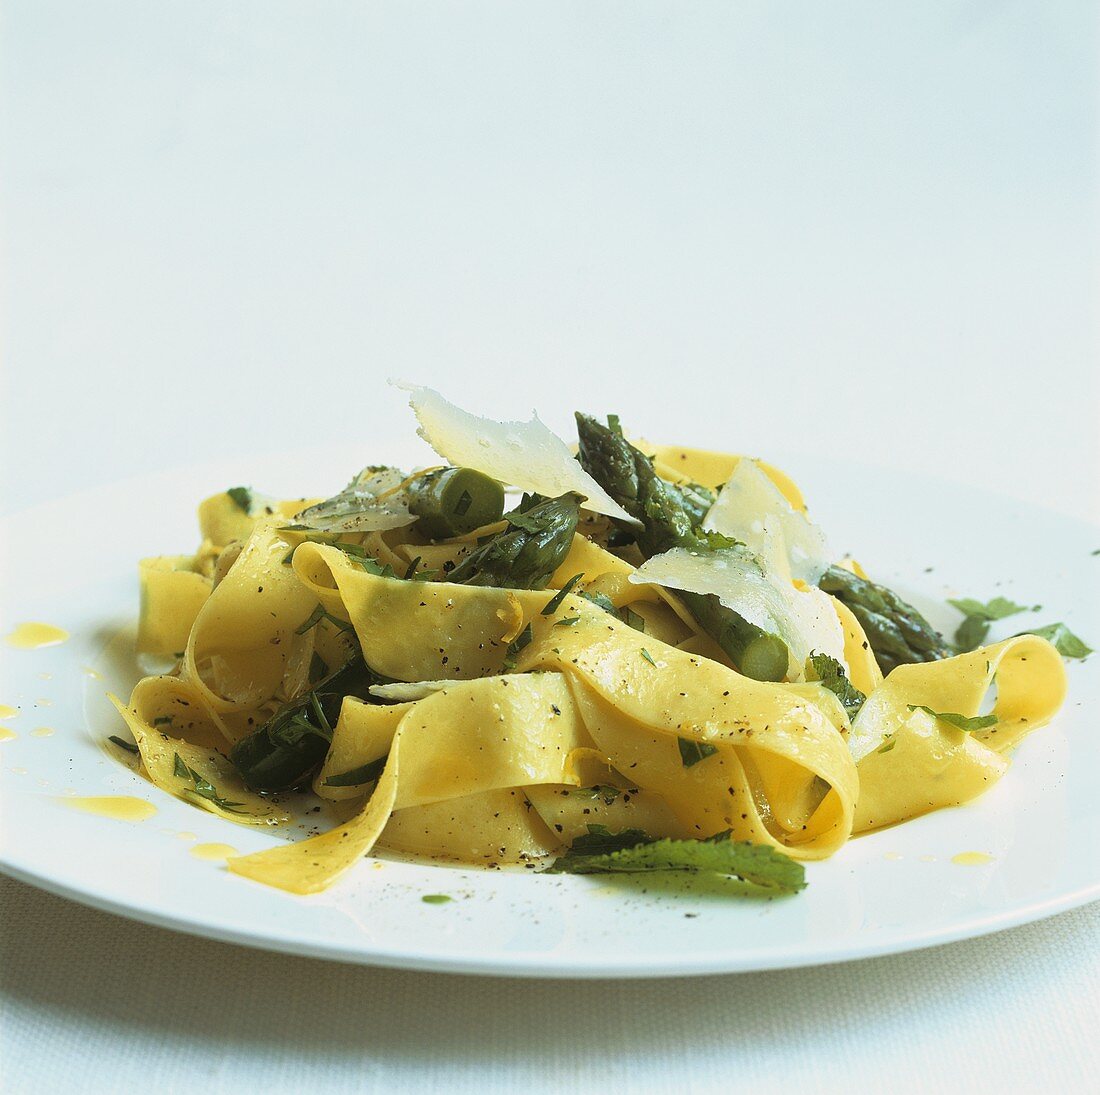 Ribbon pasta with green asparagus, lemon, herbs and Parmesan